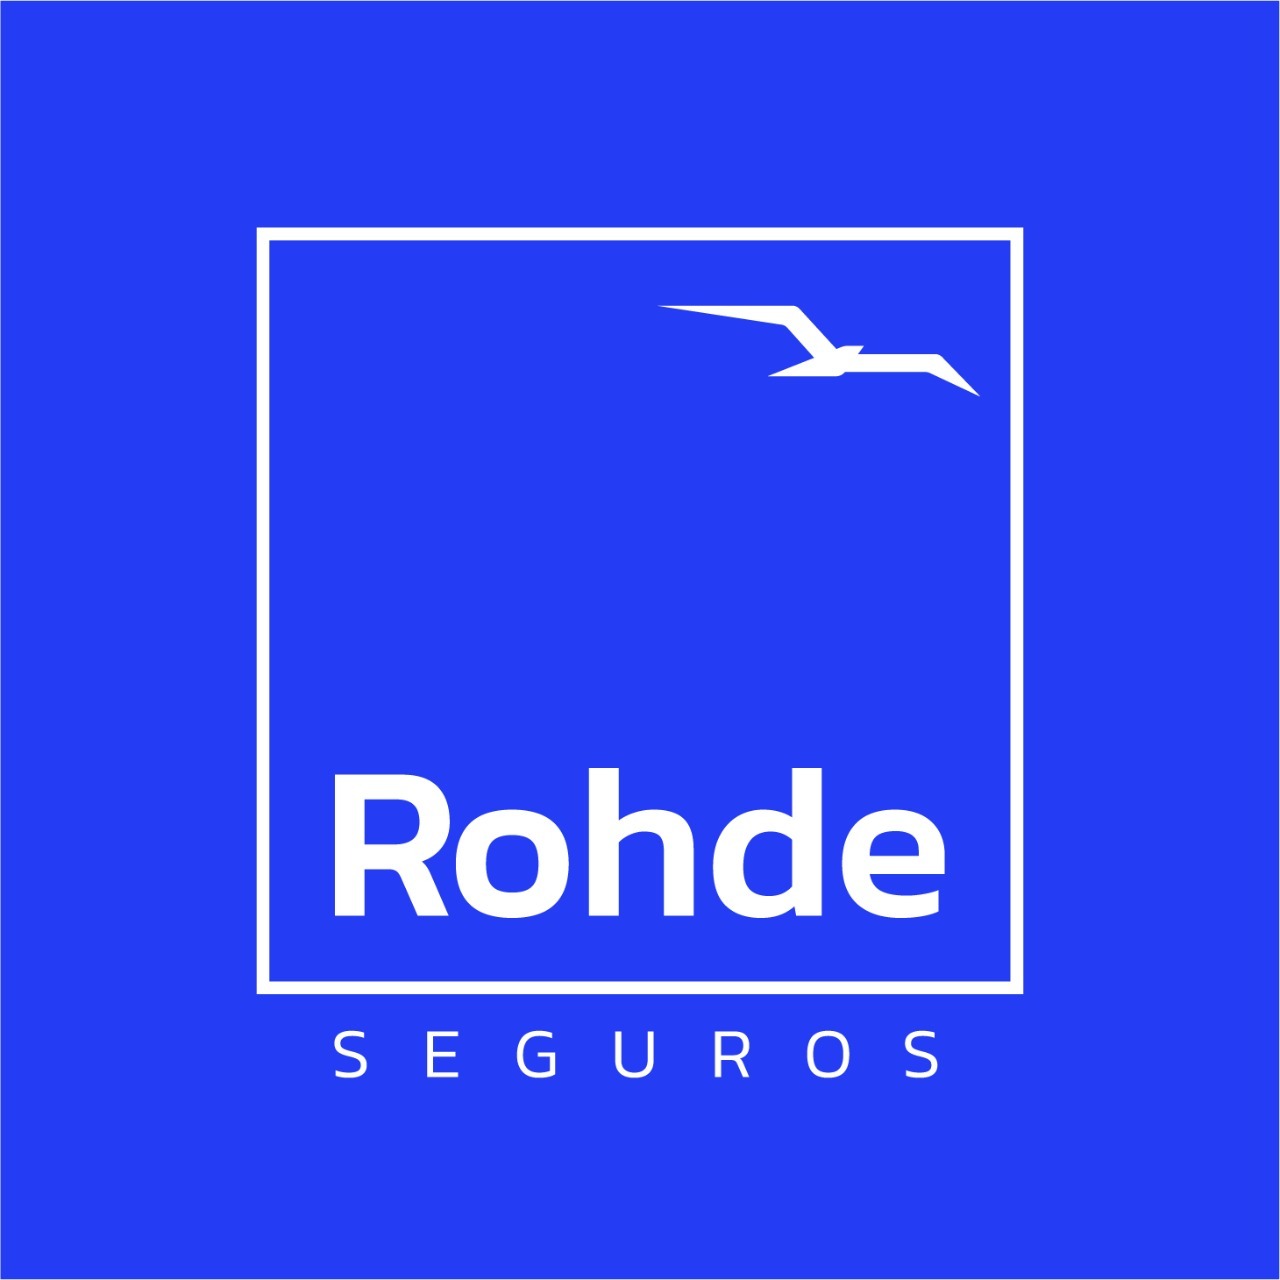 Rohde Seguros | Empresa de seguros em Ijuí Rio grande do sul